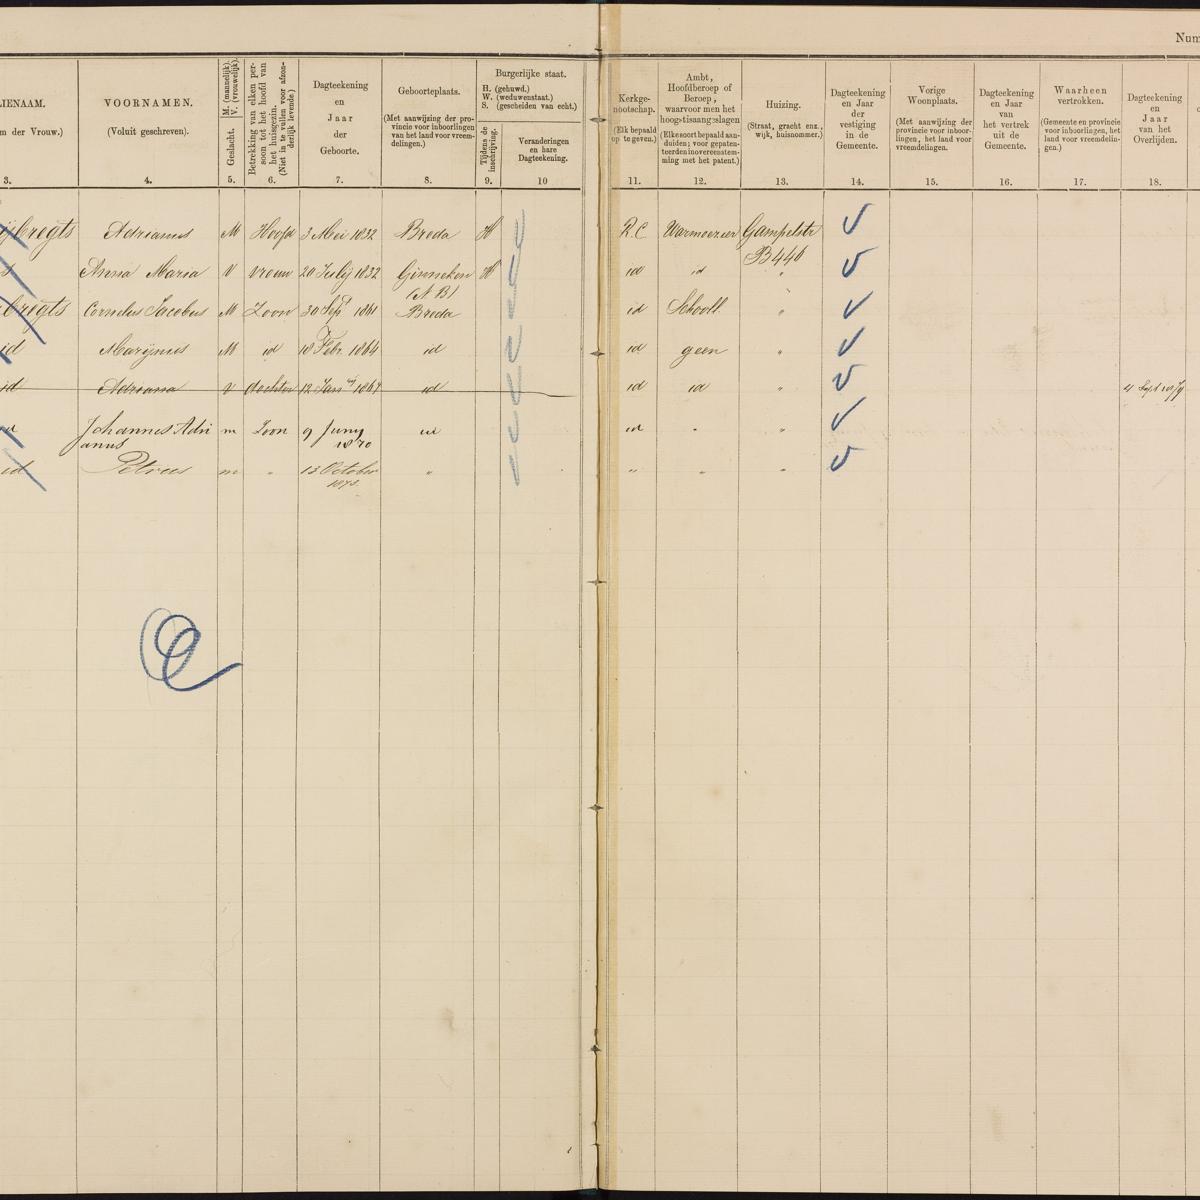 Population register, Breda, 1870-1879, part 10, sheet 199